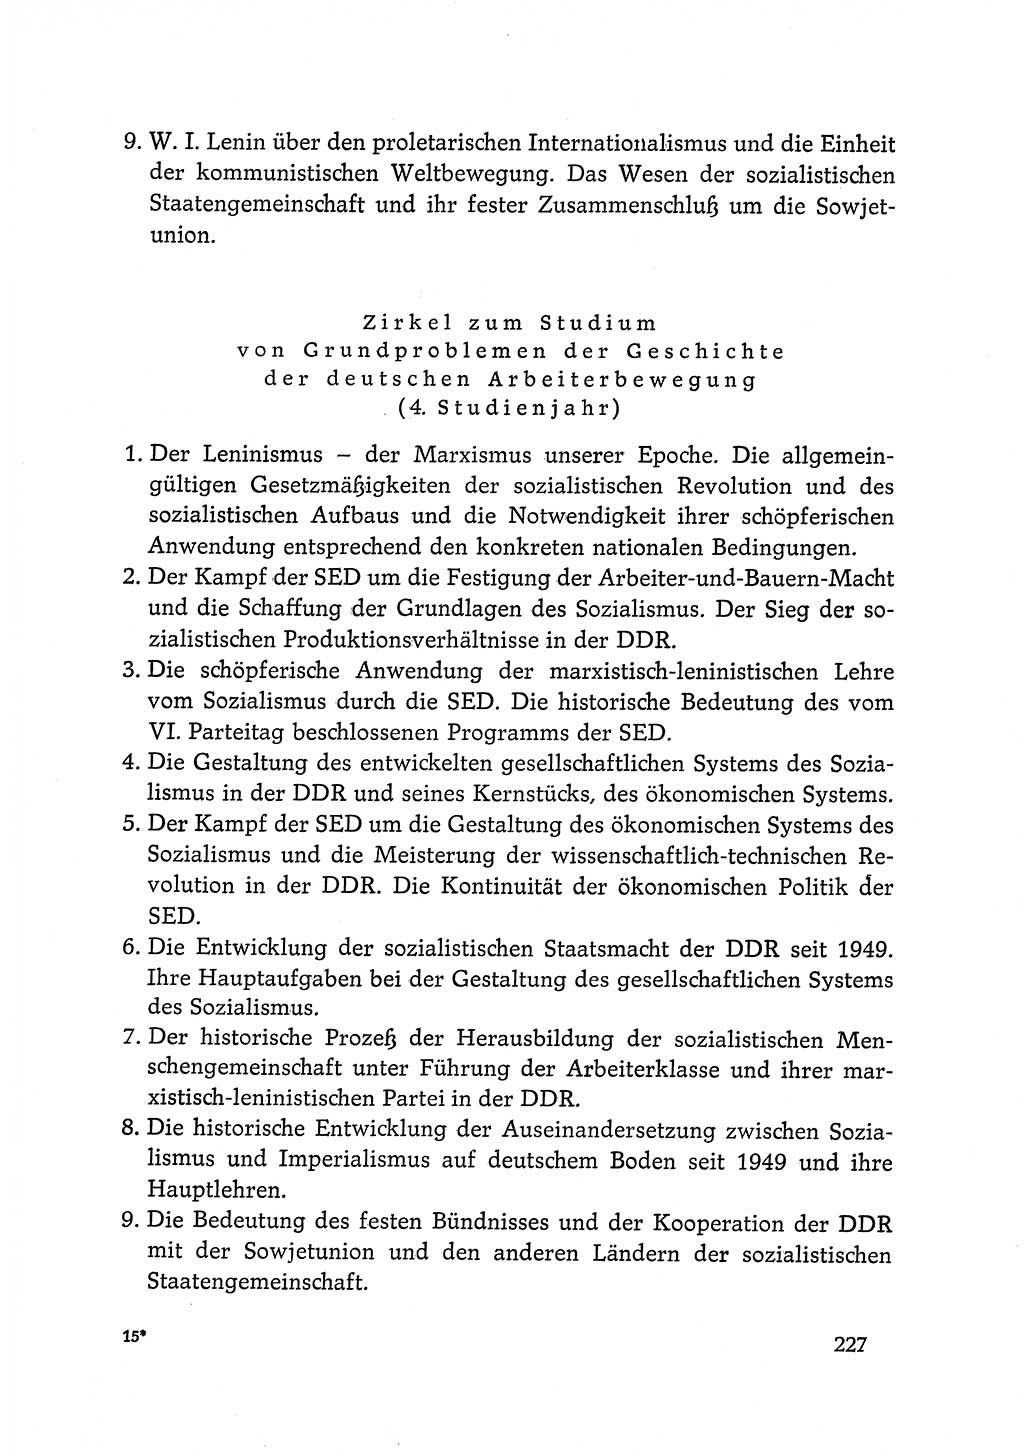 Dokumente der Sozialistischen Einheitspartei Deutschlands (SED) [Deutsche Demokratische Republik (DDR)] 1968-1969, Seite 227 (Dok. SED DDR 1968-1969, S. 227)